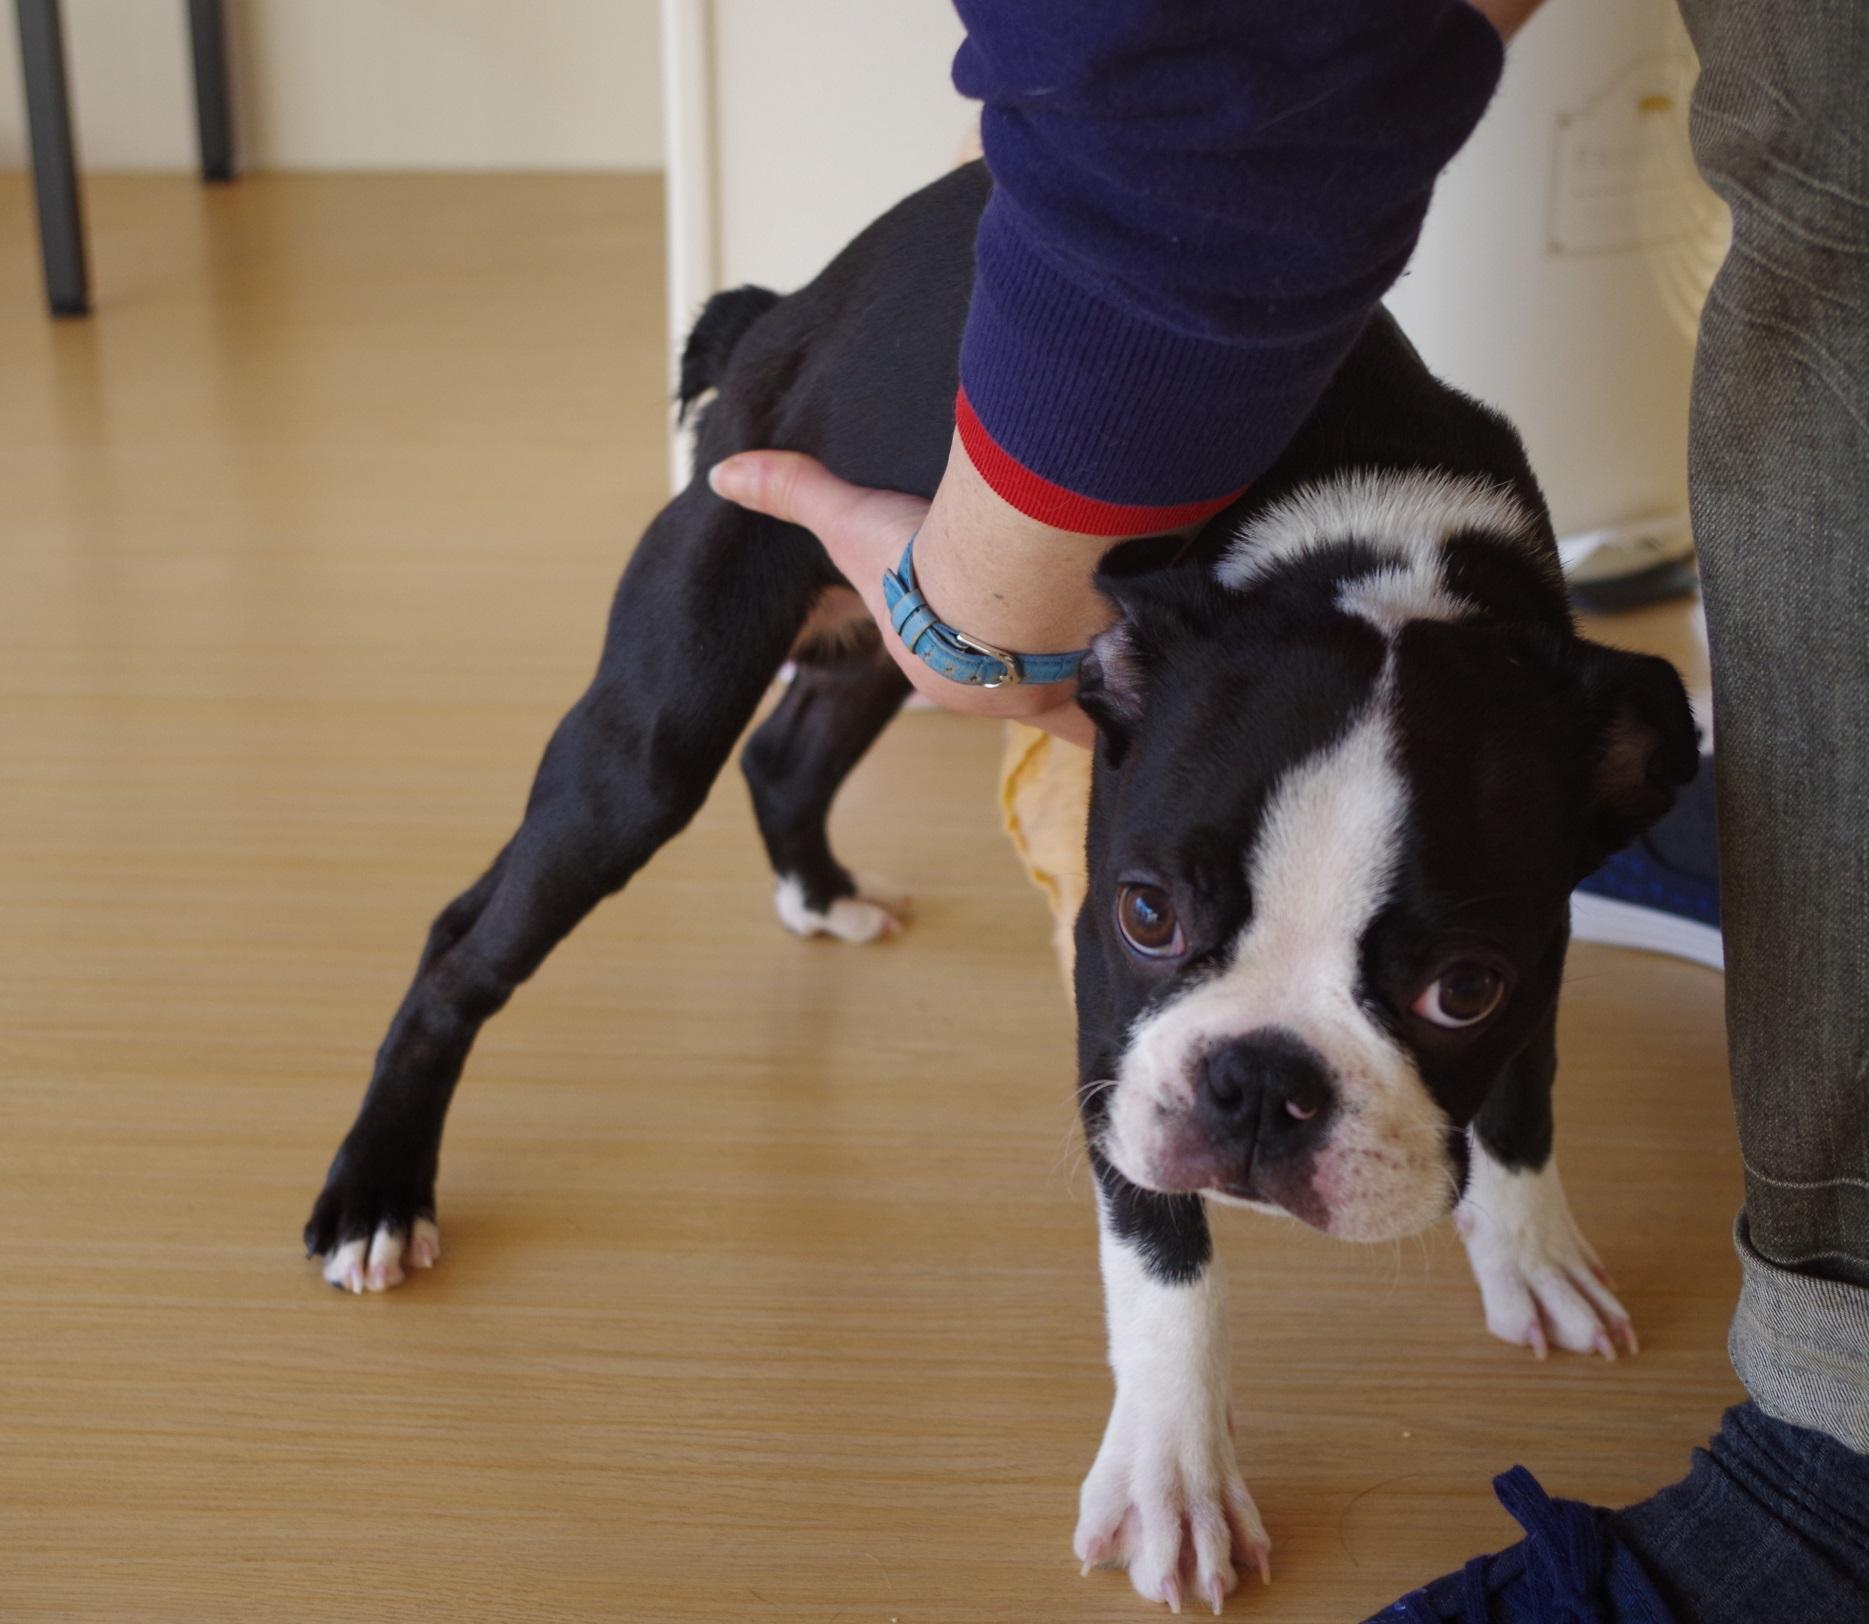 子犬のしつけ教室 さくらのおうち 資格取得者歓迎 松戸市 犬のしつけ教室アルバイト募集中 動物病院 ペット業界の求人転職サイト ペットリクルート